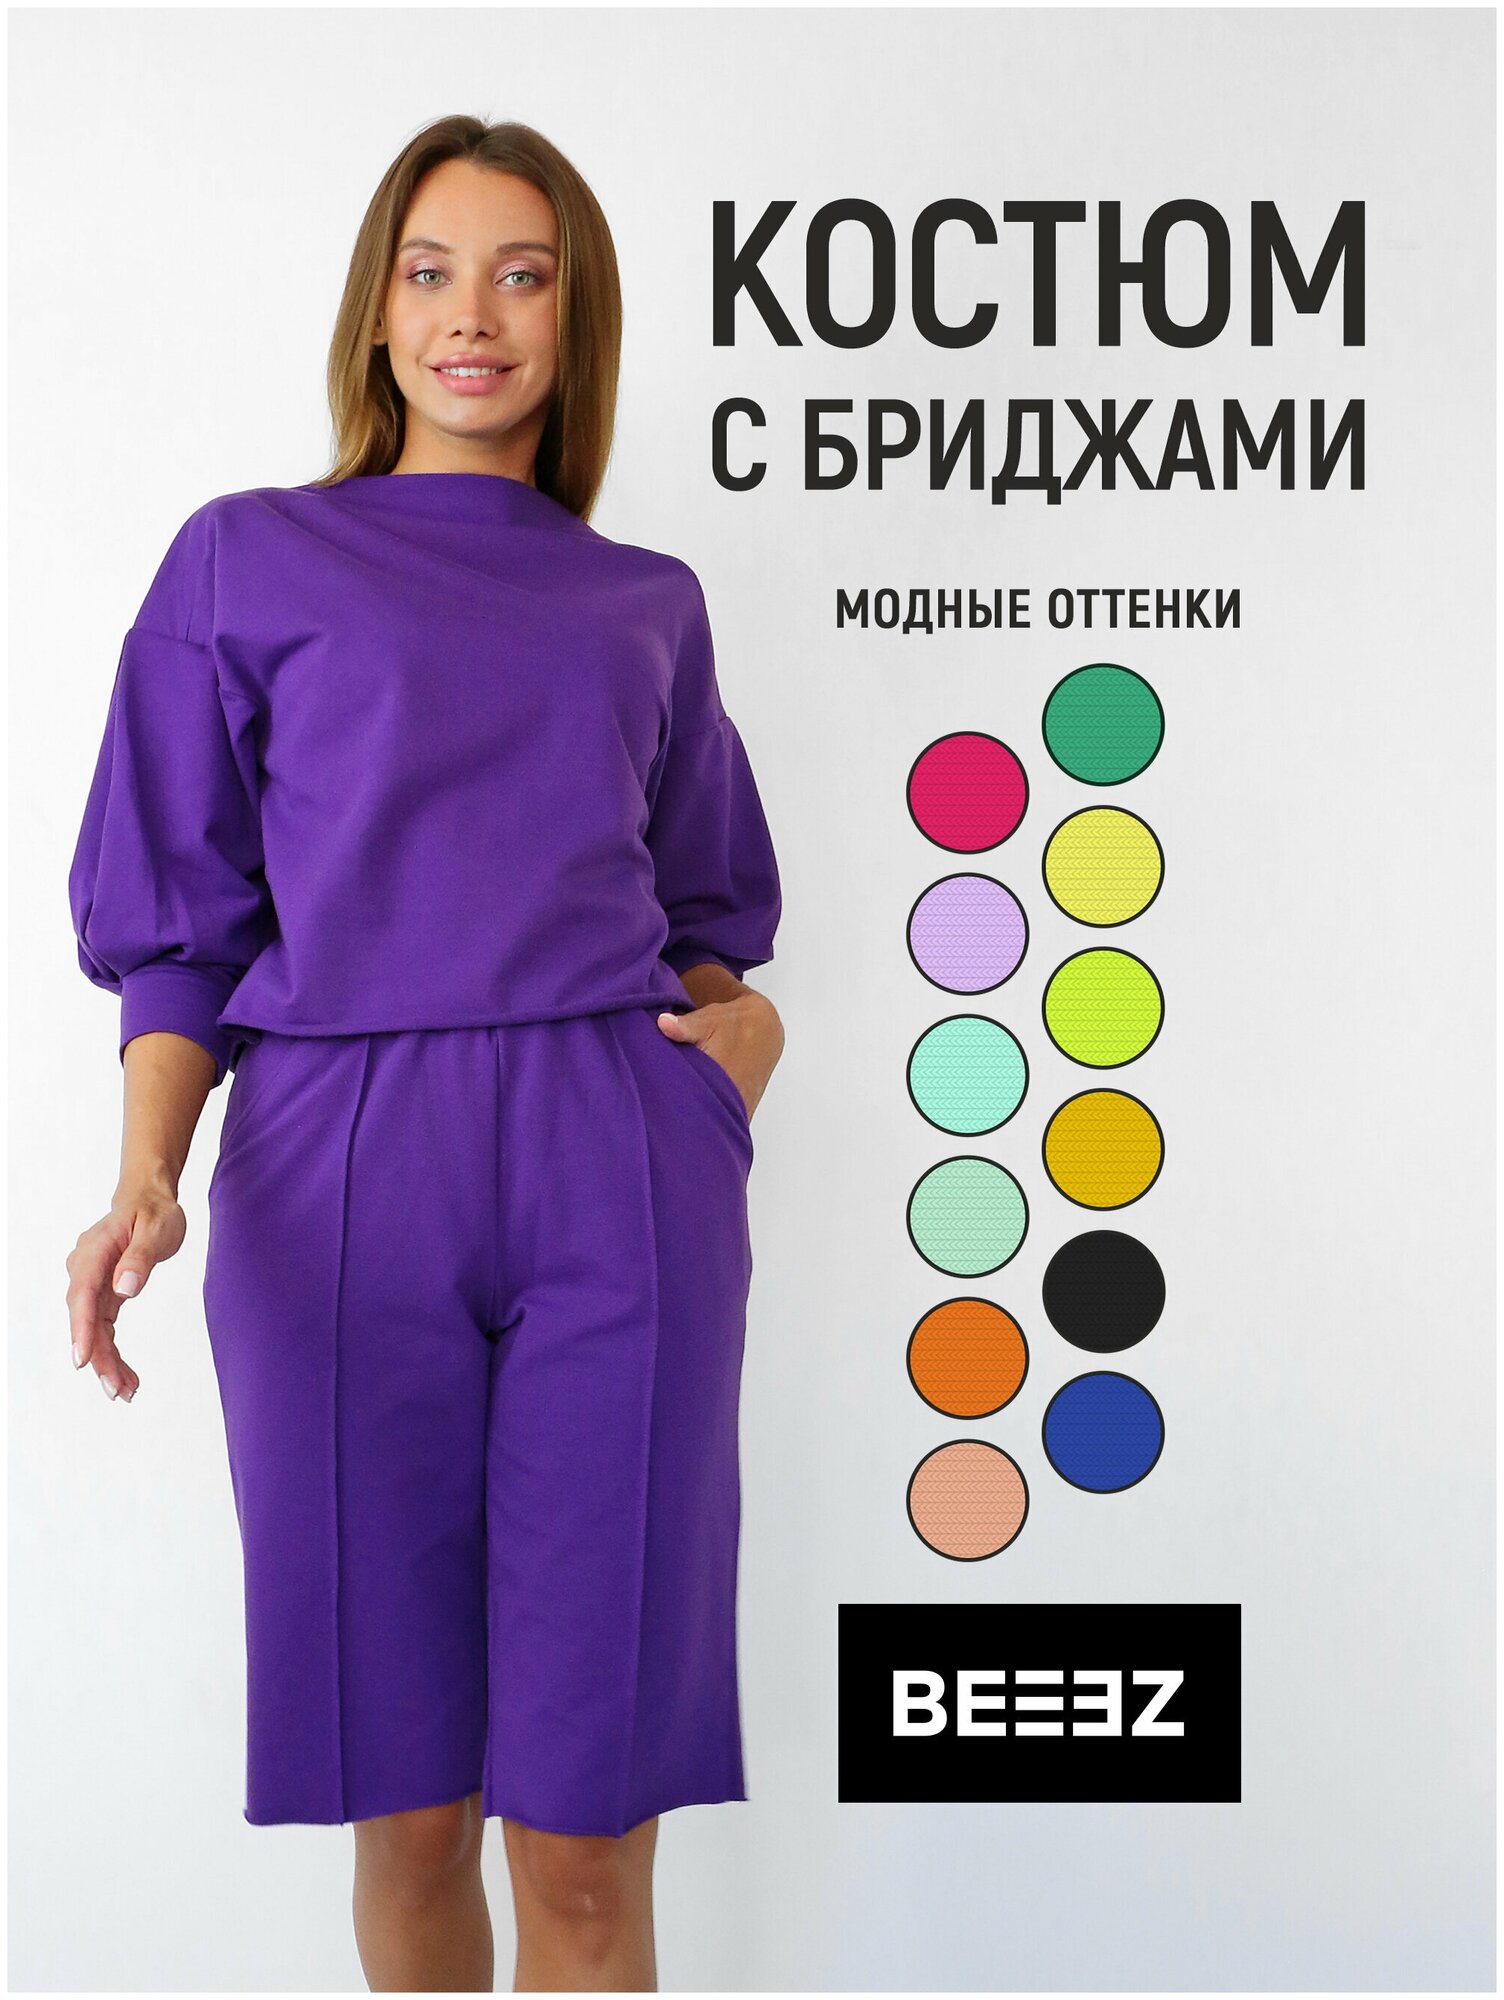 Комплект одежды BEEEZ